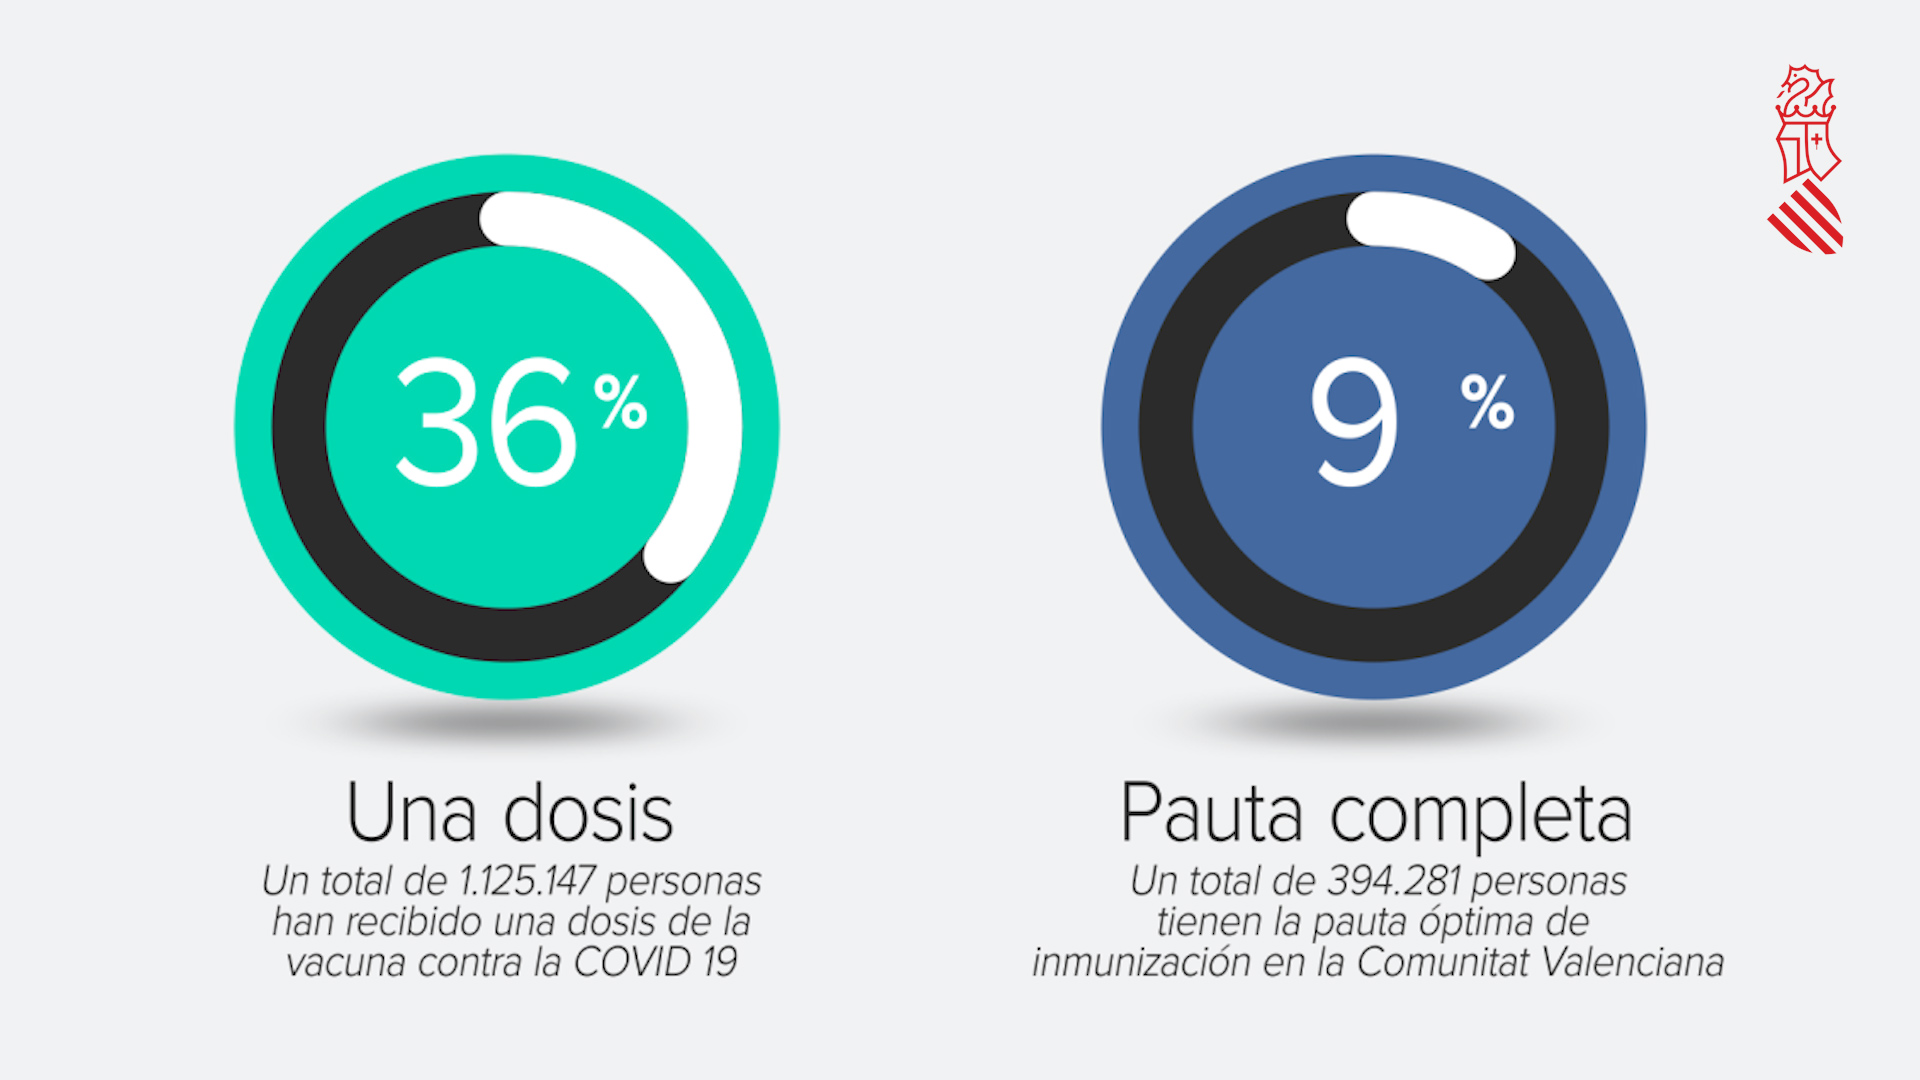 La Comunitat Valenciana ya cuenta con más personas inmunizadas por la vacuna contra la COVID-19 que contagiadas